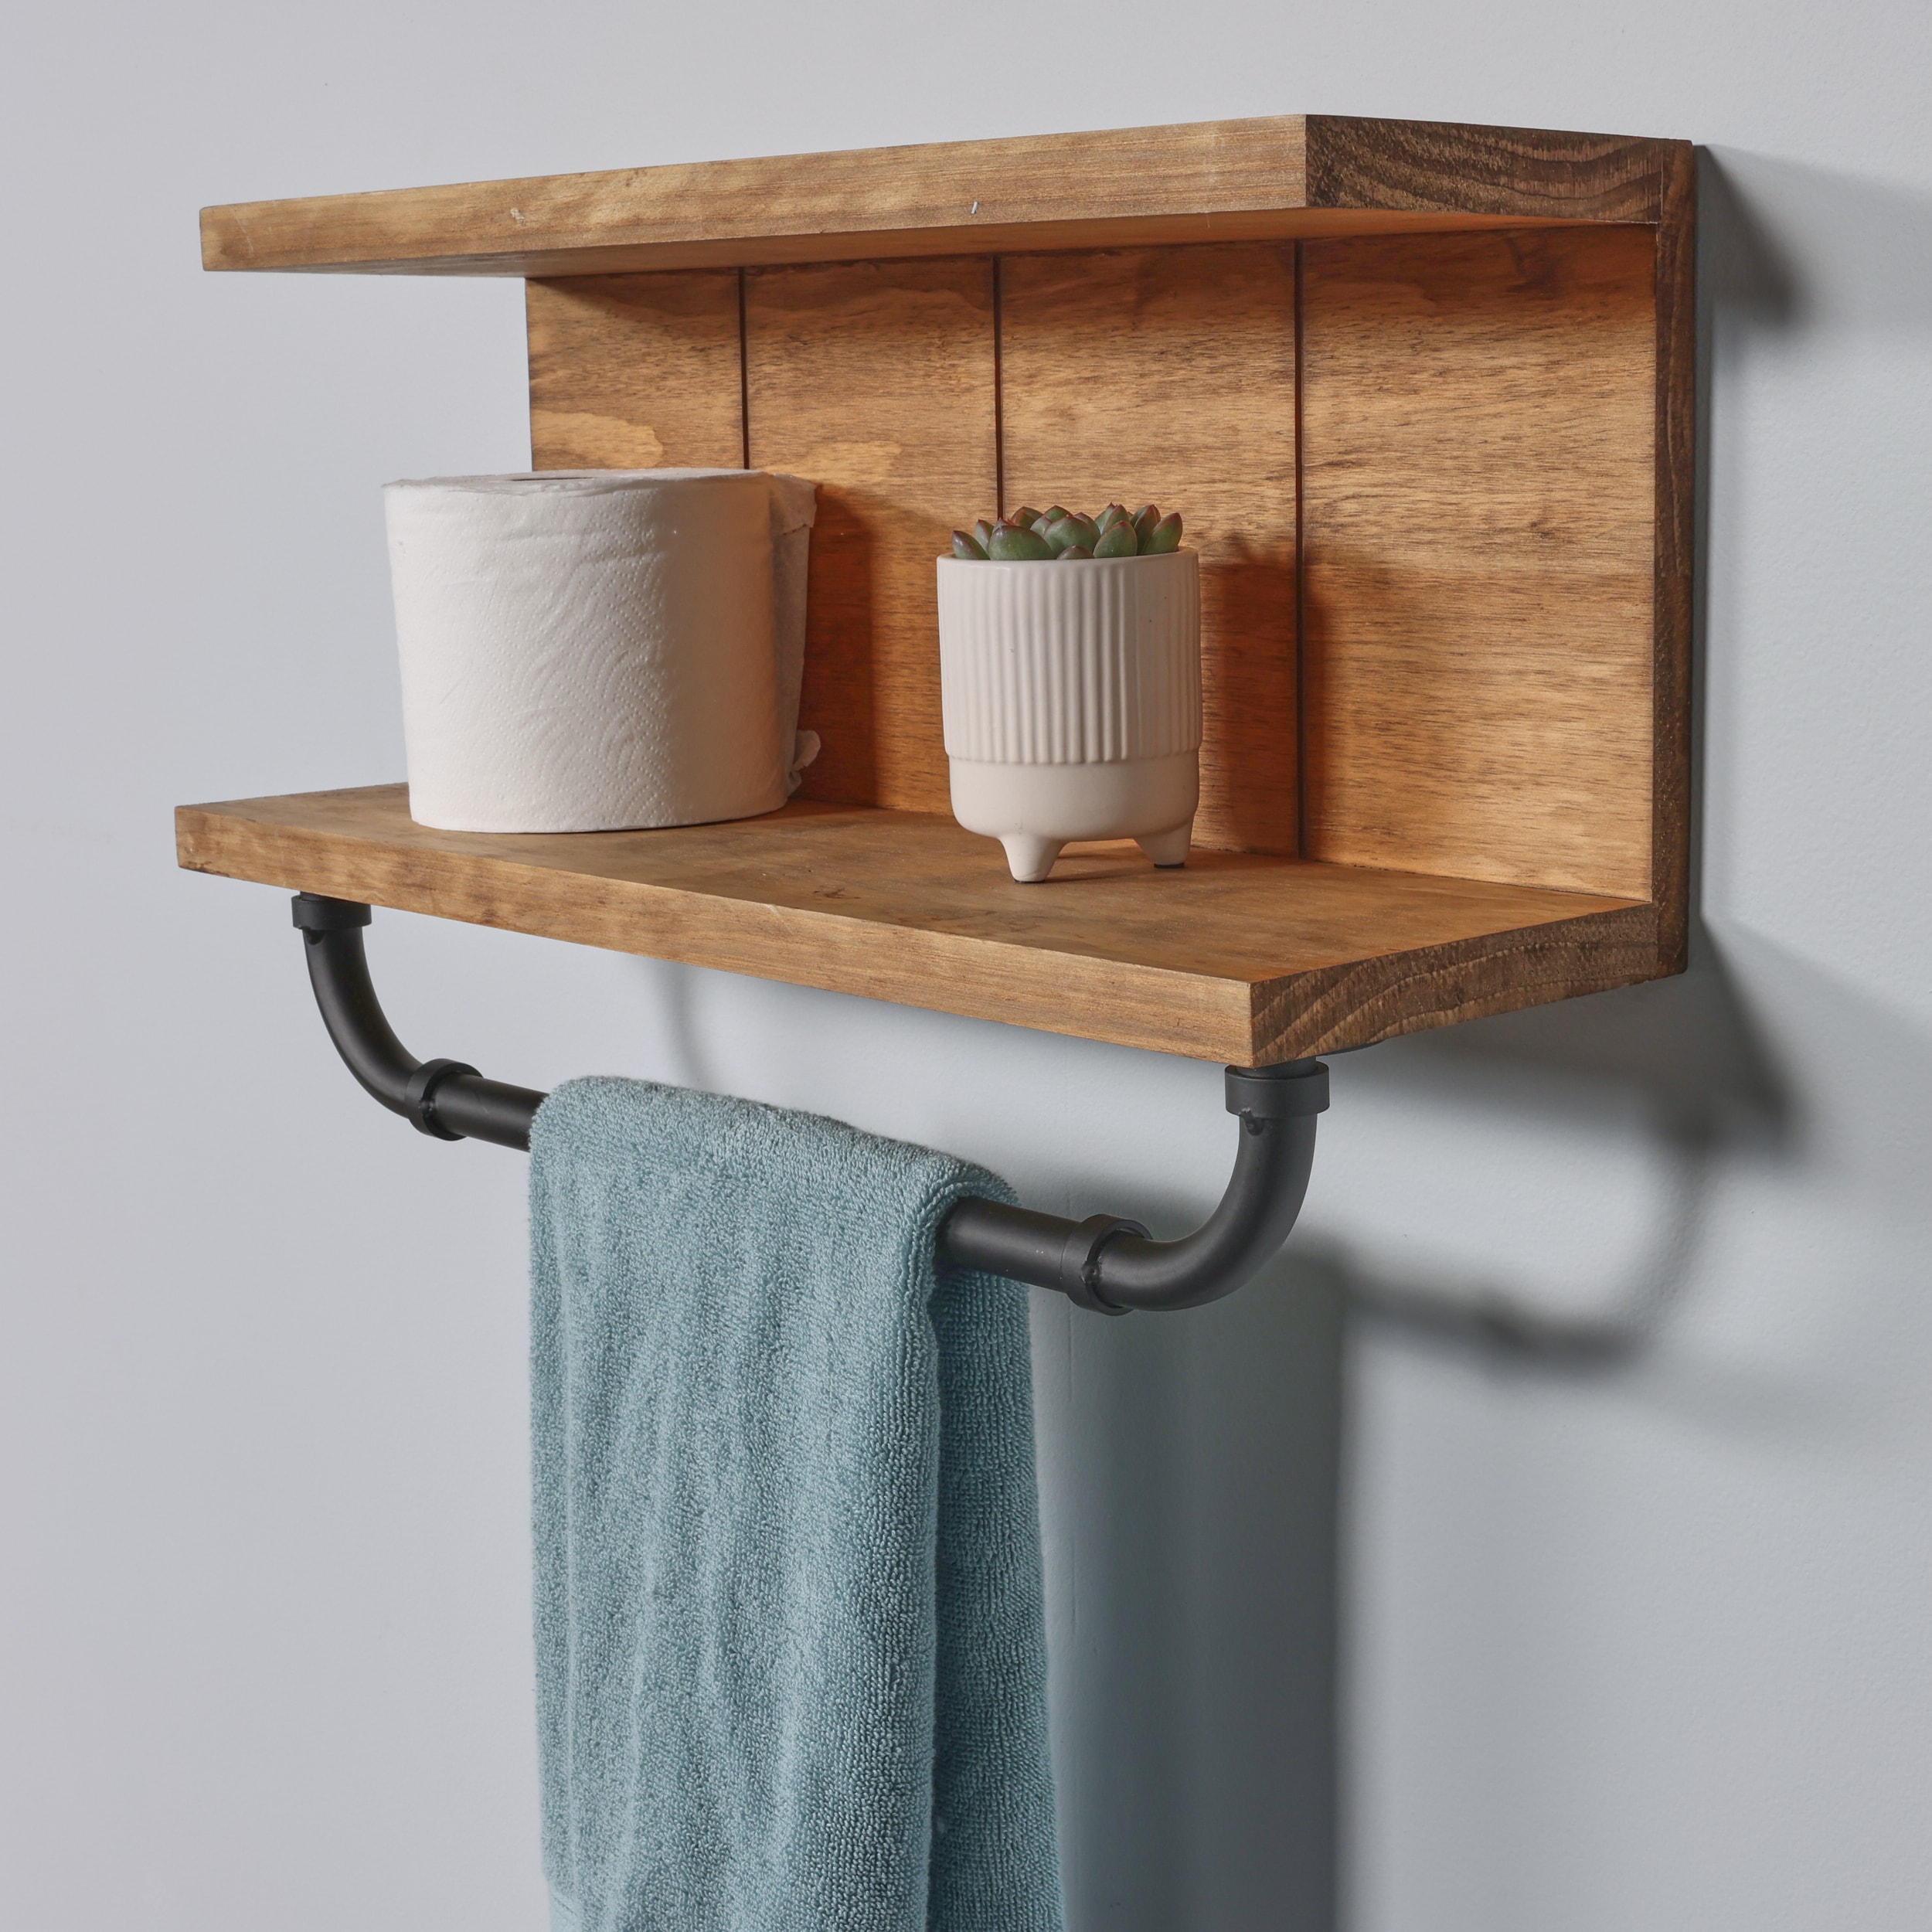 Wood and Acrylic Bathroom Shelf